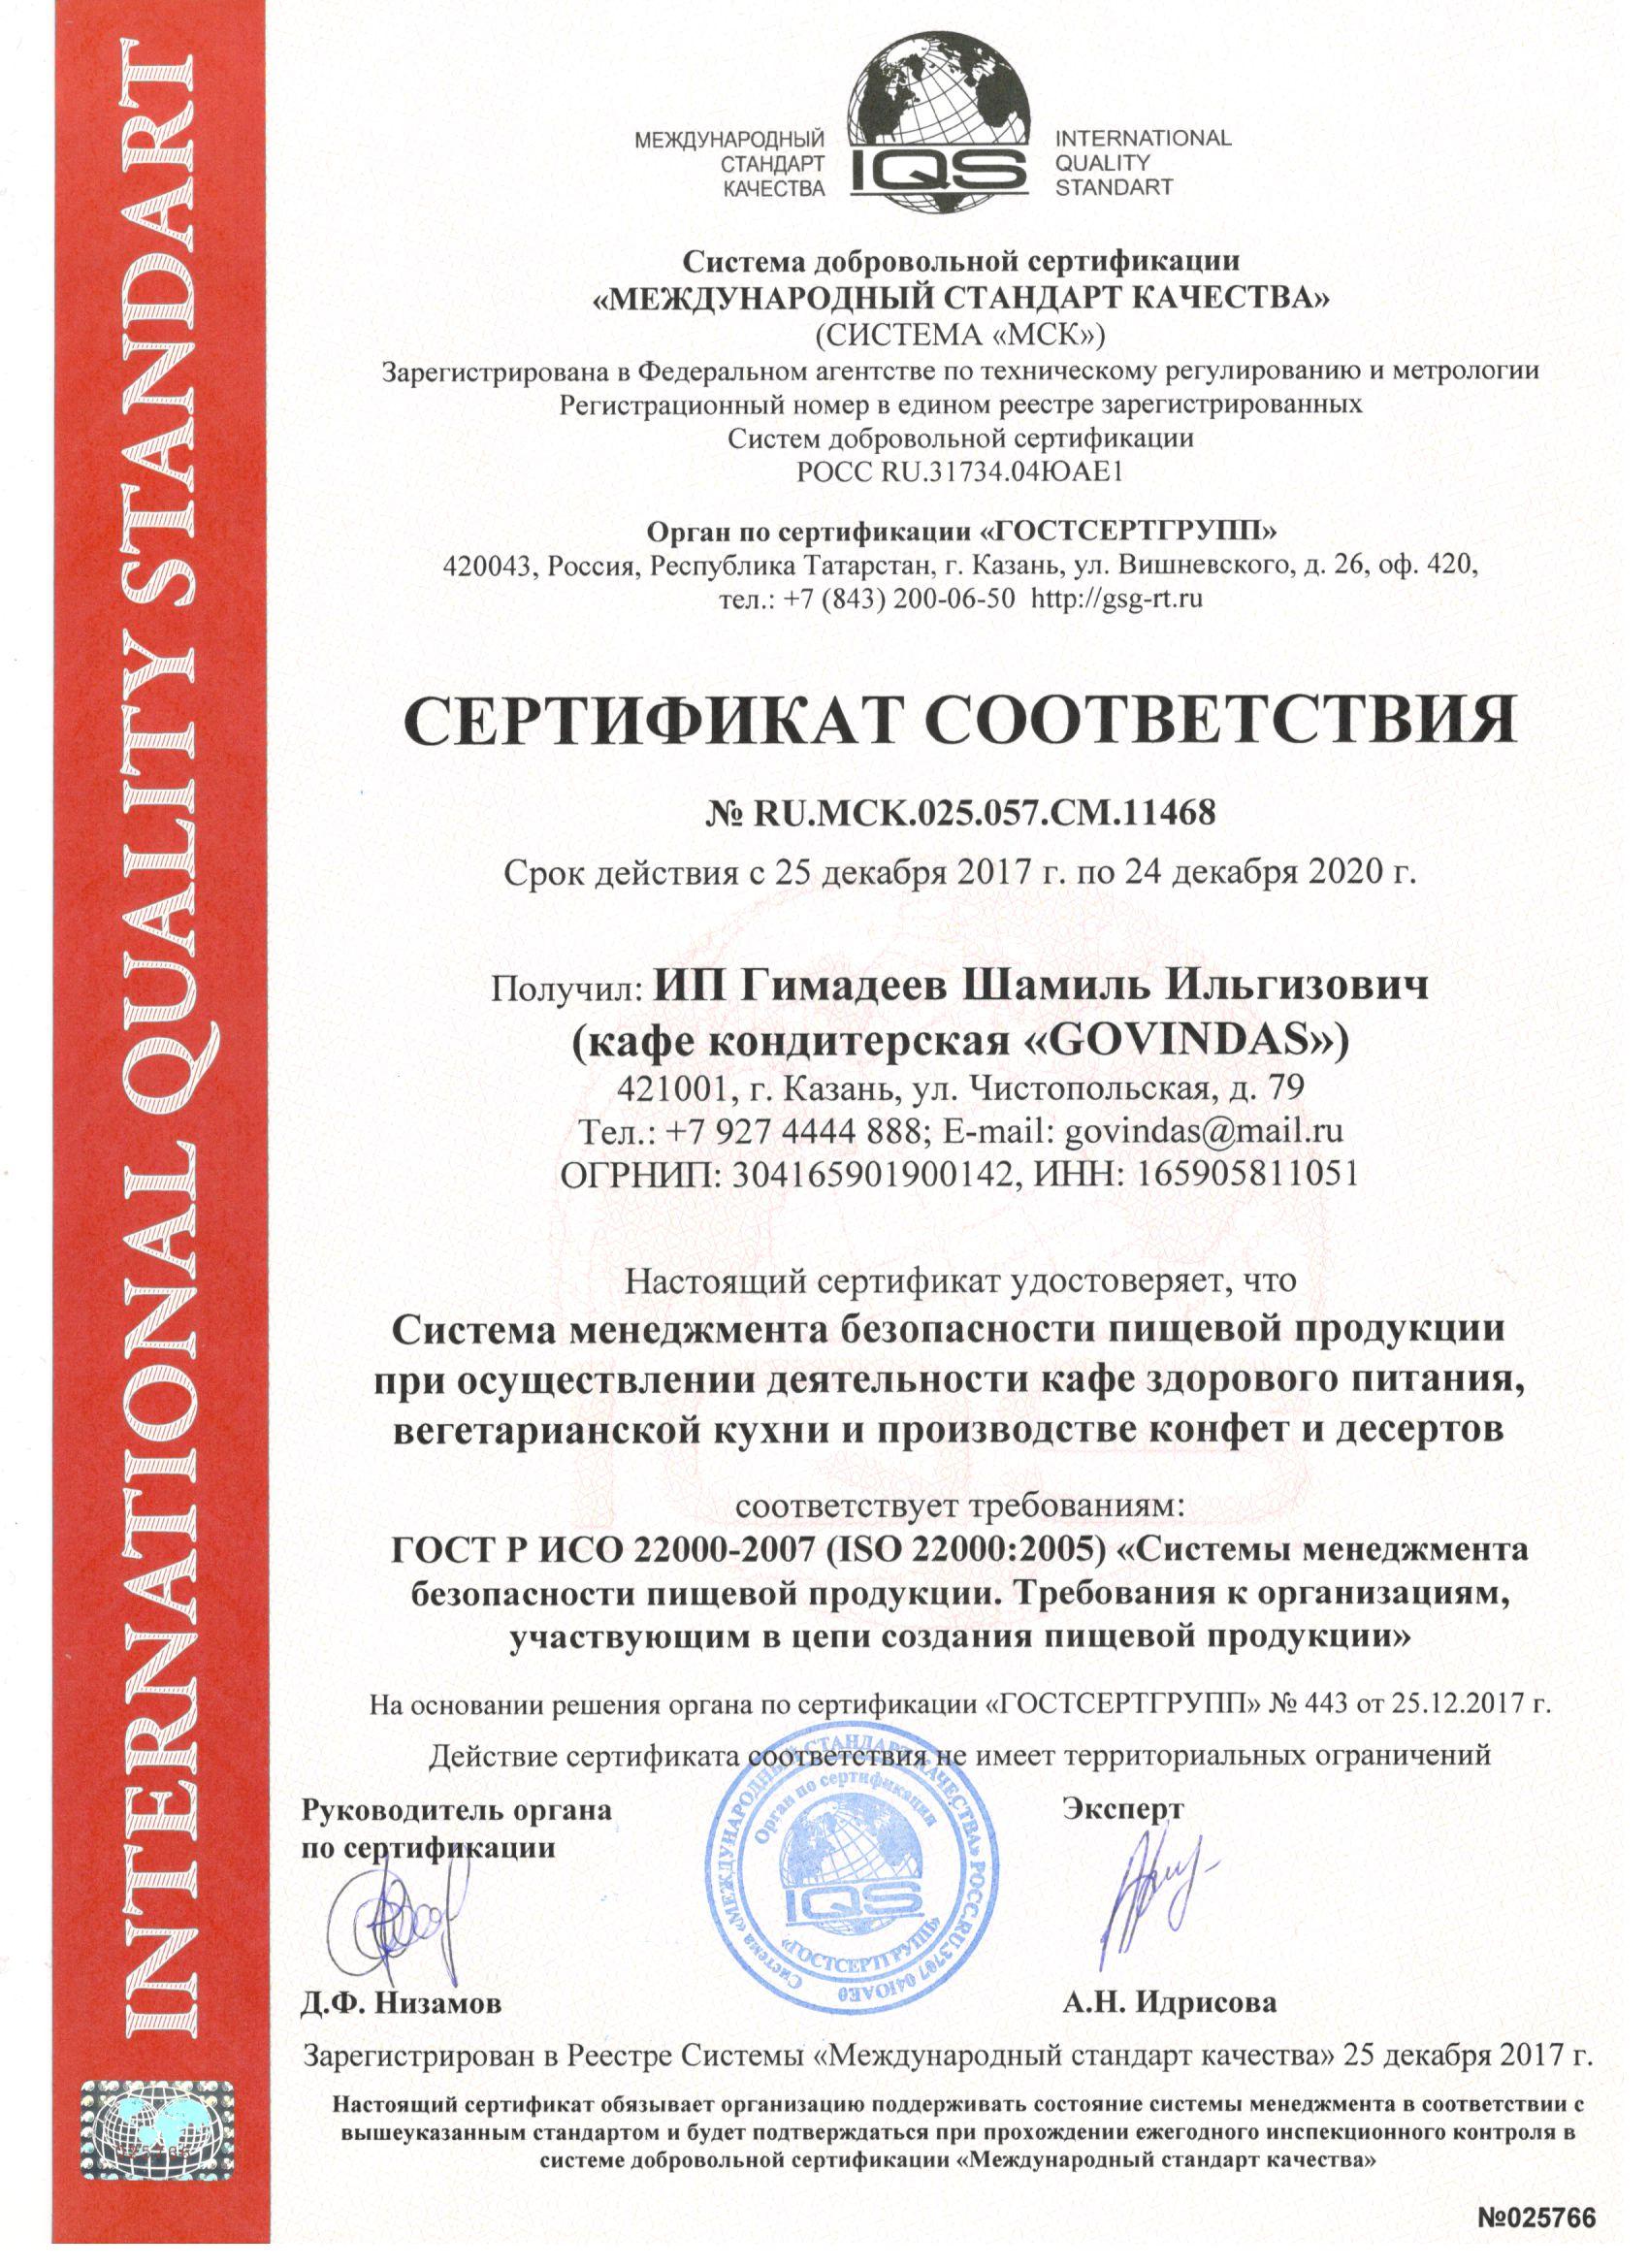 сертификат соответстви